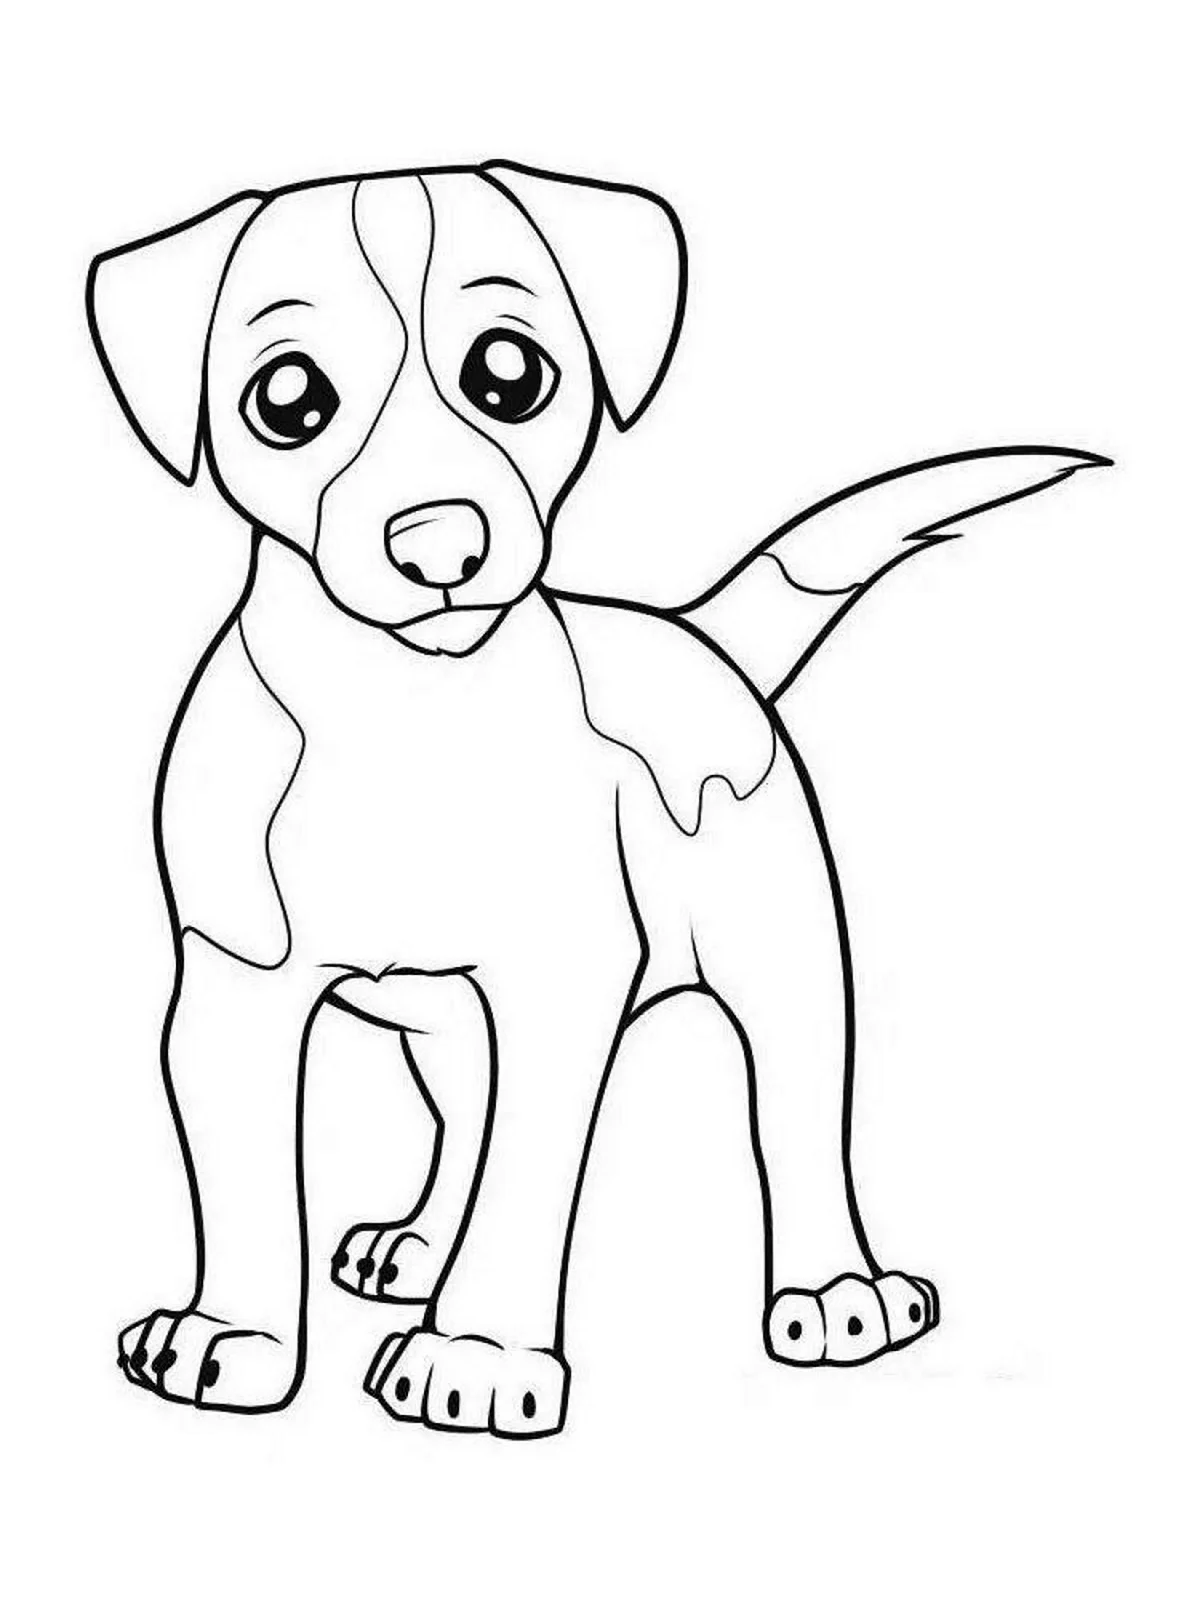 Раскраска щенок Джек Рассел. Для срисовки